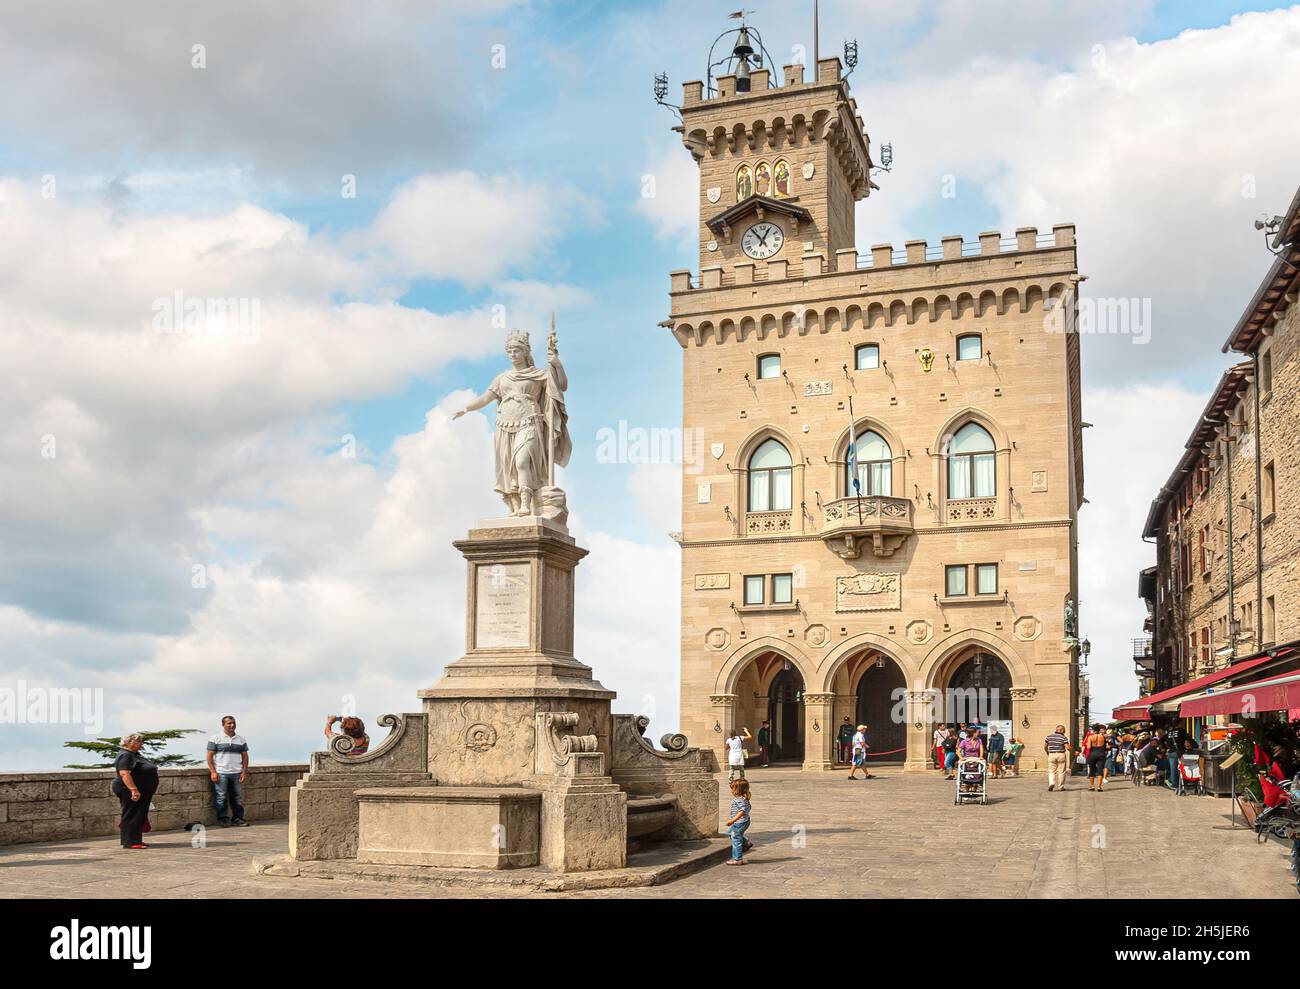 Statua della Libertà and the Palazzo Publico, historical town center of San Marino Stock Photo